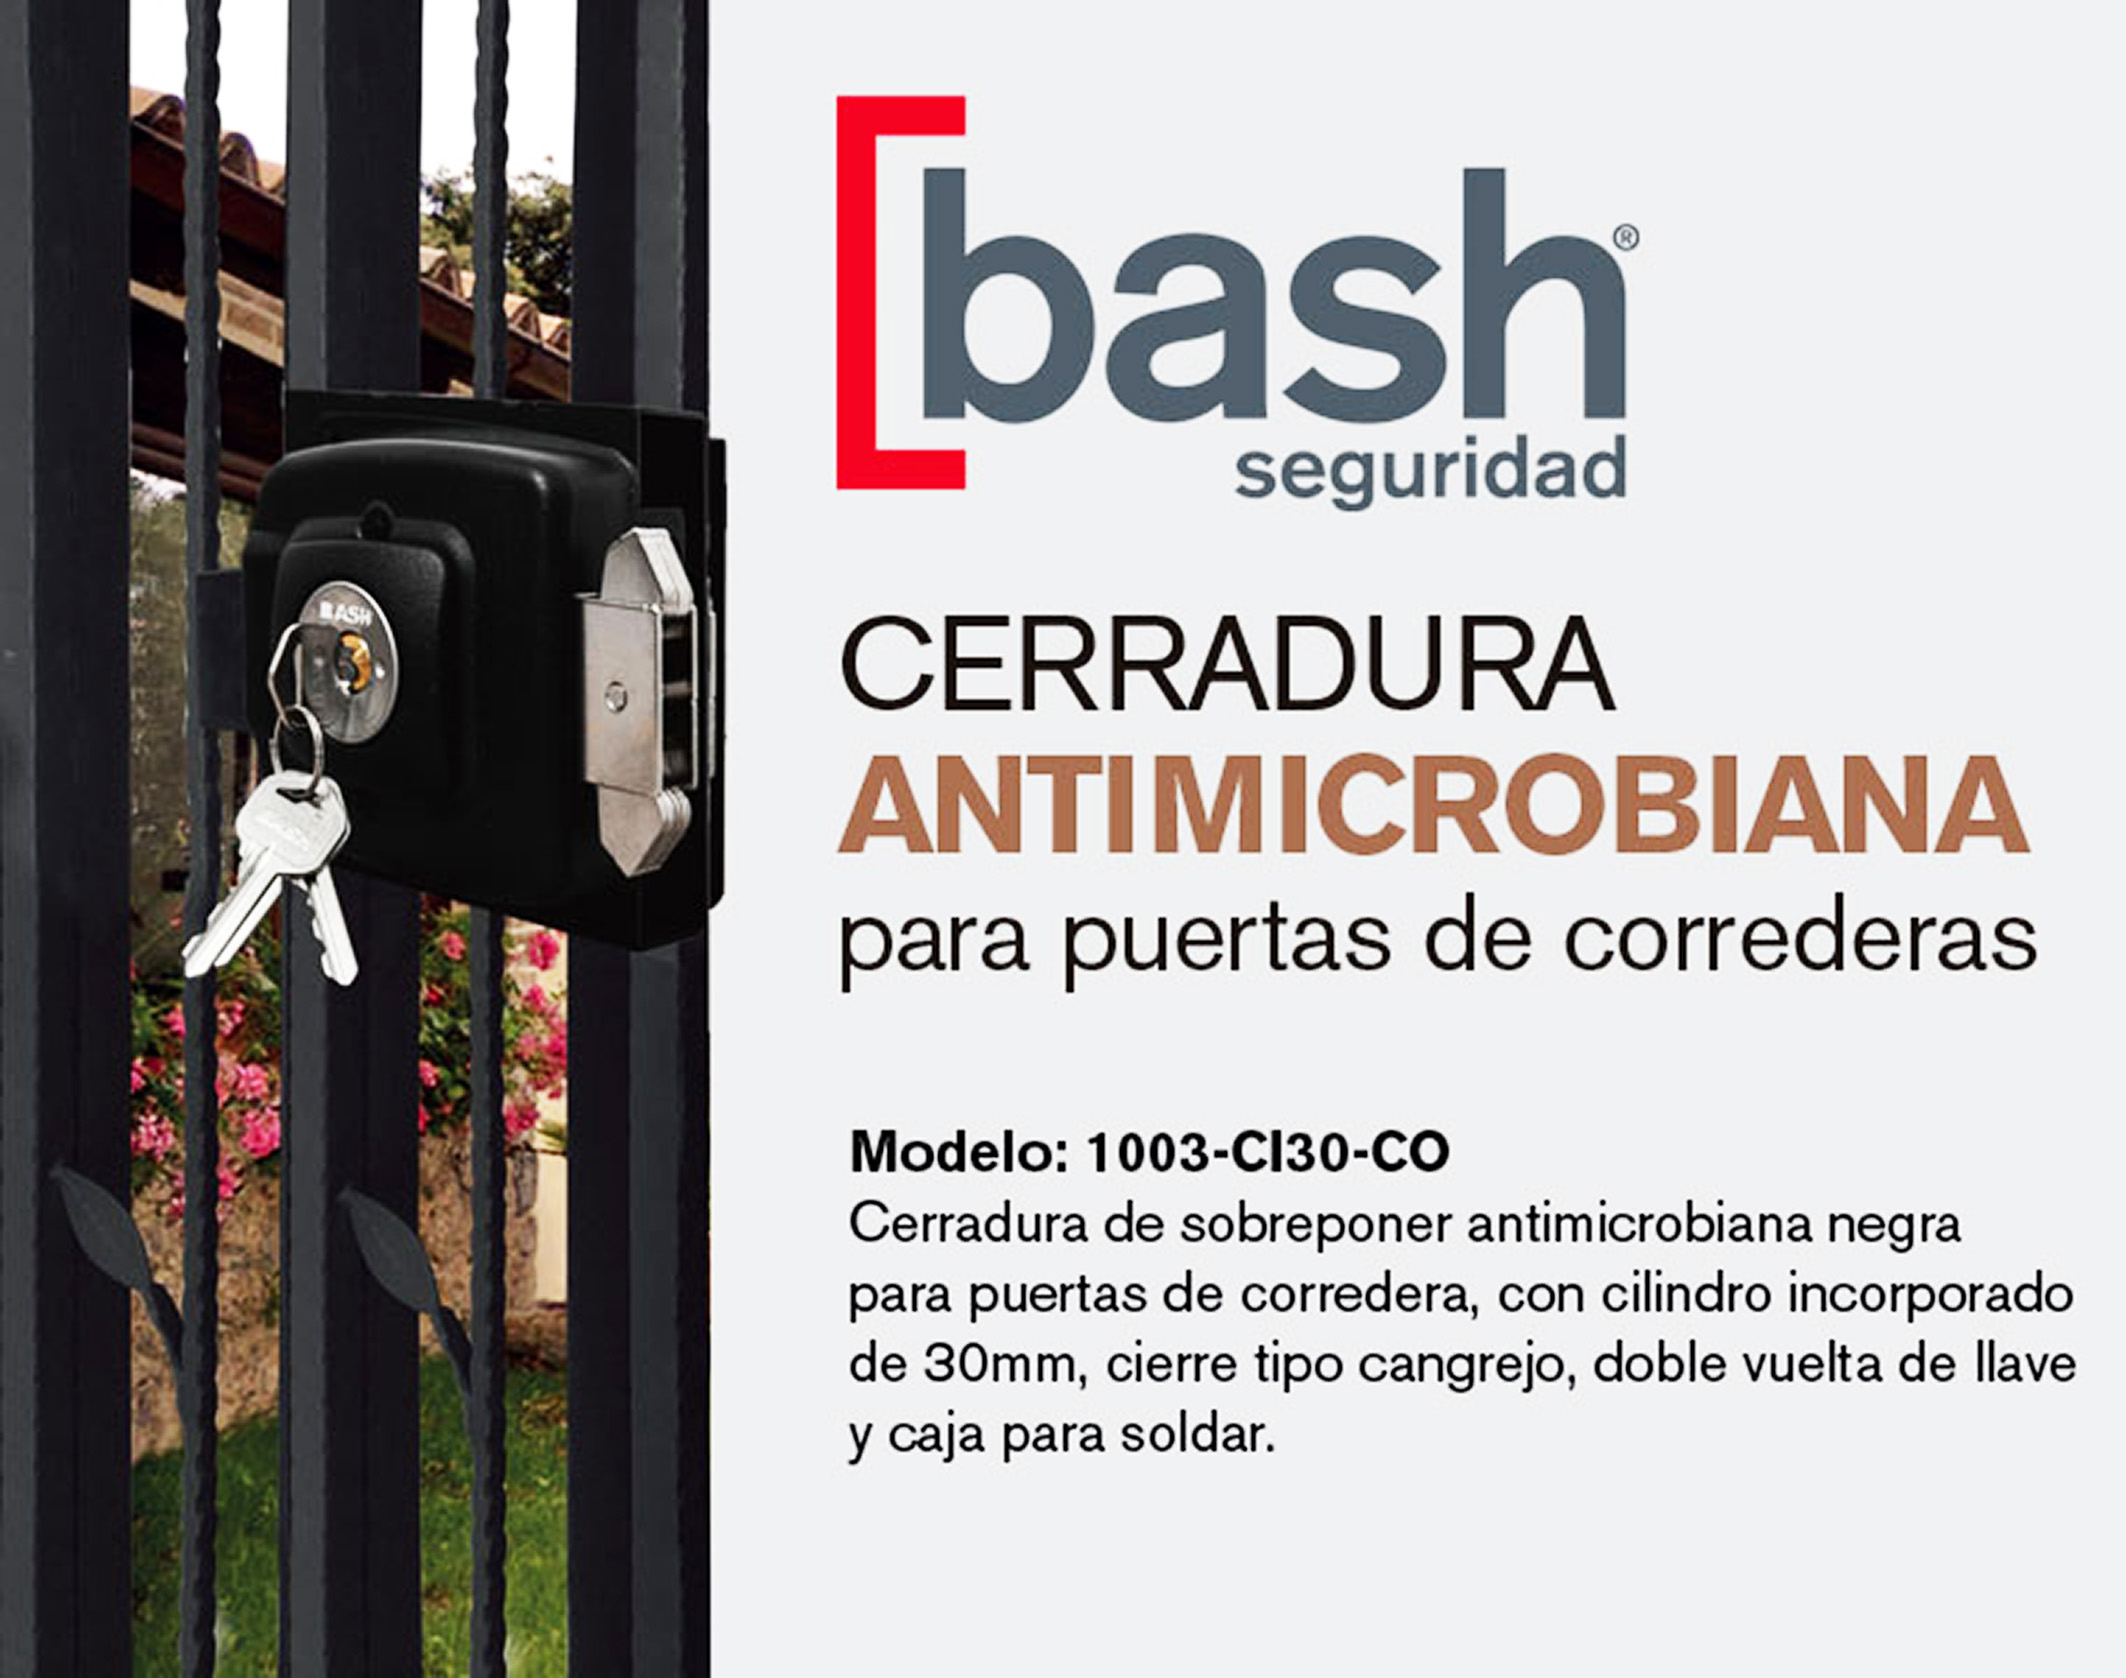 BASH presenta la CERRADURA ANTIMICROBIANA para puertas de correderas.